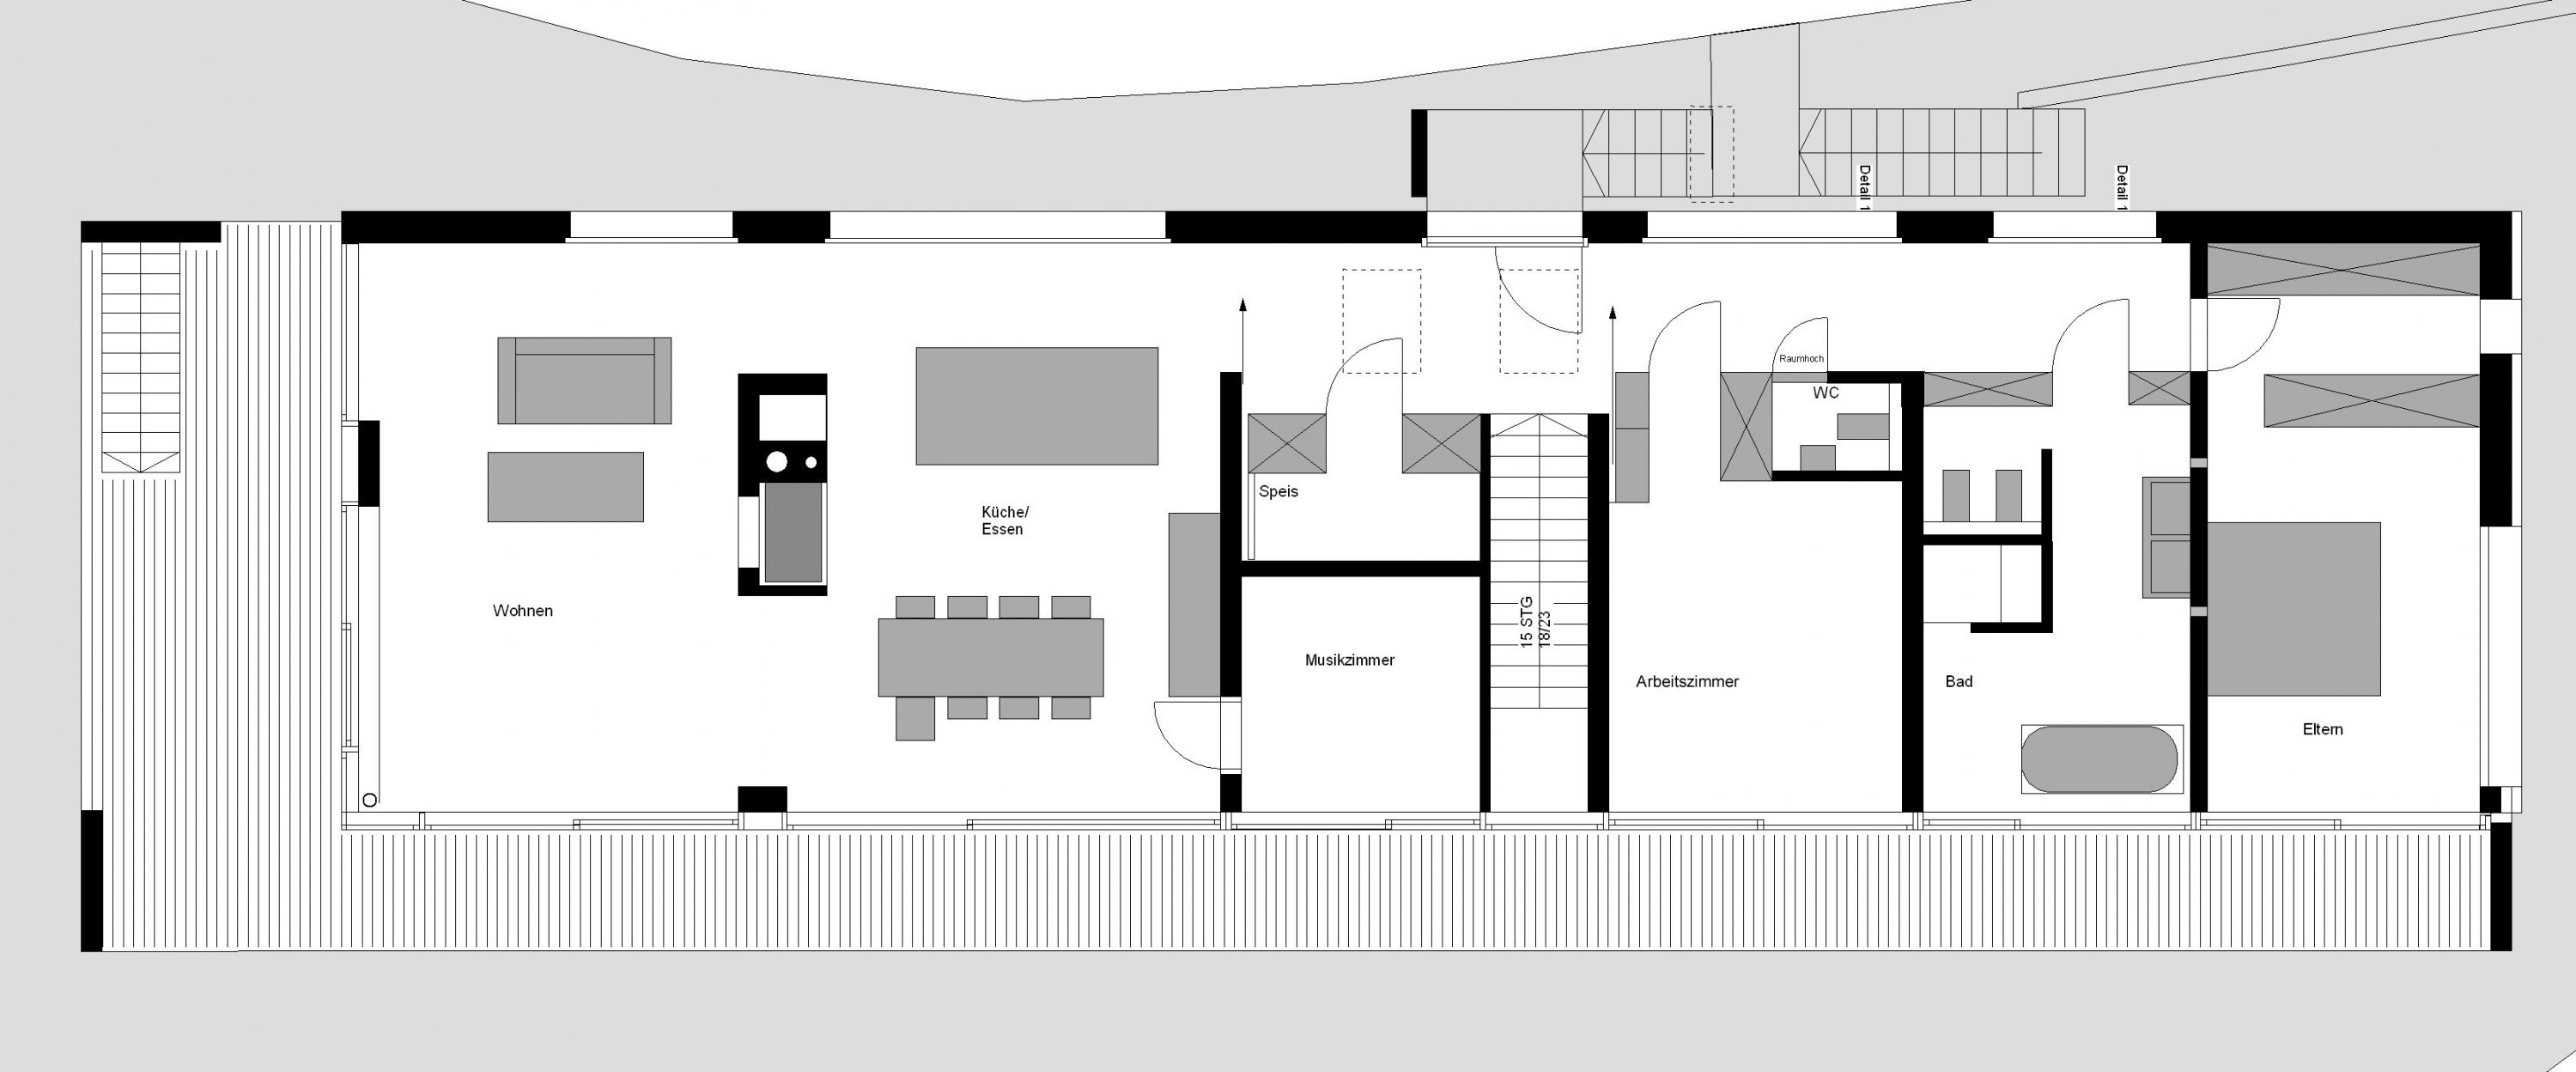 blockhaus-mit-krueppelwalmdach-am-wald-planung-verbessern-269409-2.jpg